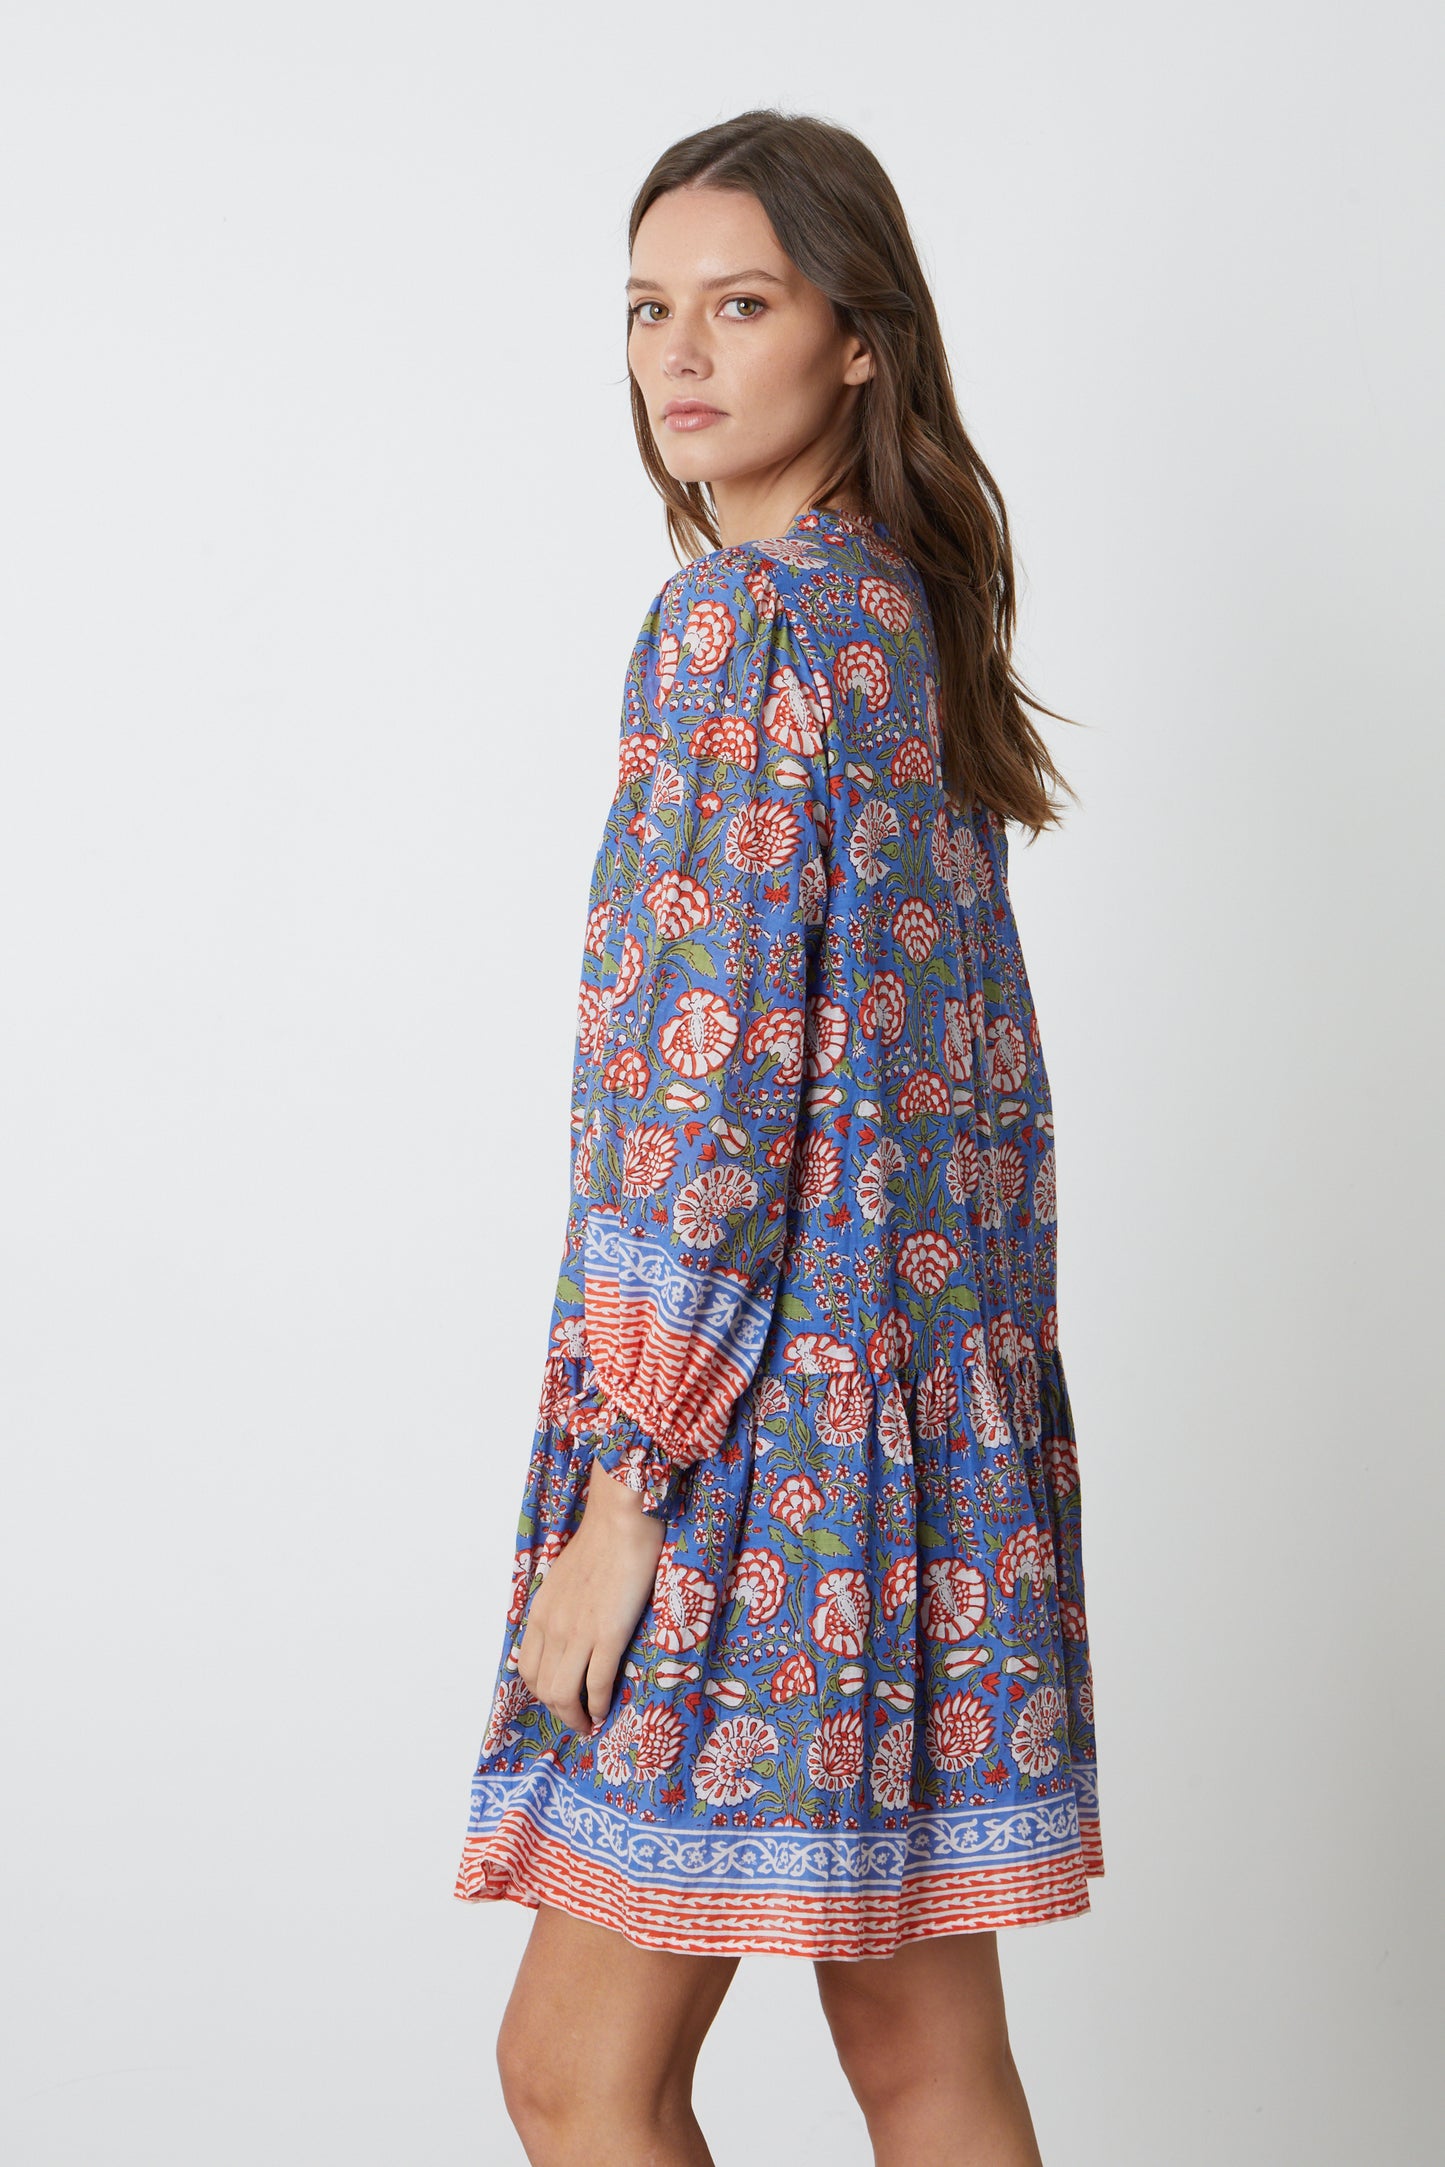 The model is wearing a Velvet by Graham & Spencer Juliette Printed Boho Dress.-26577349935297